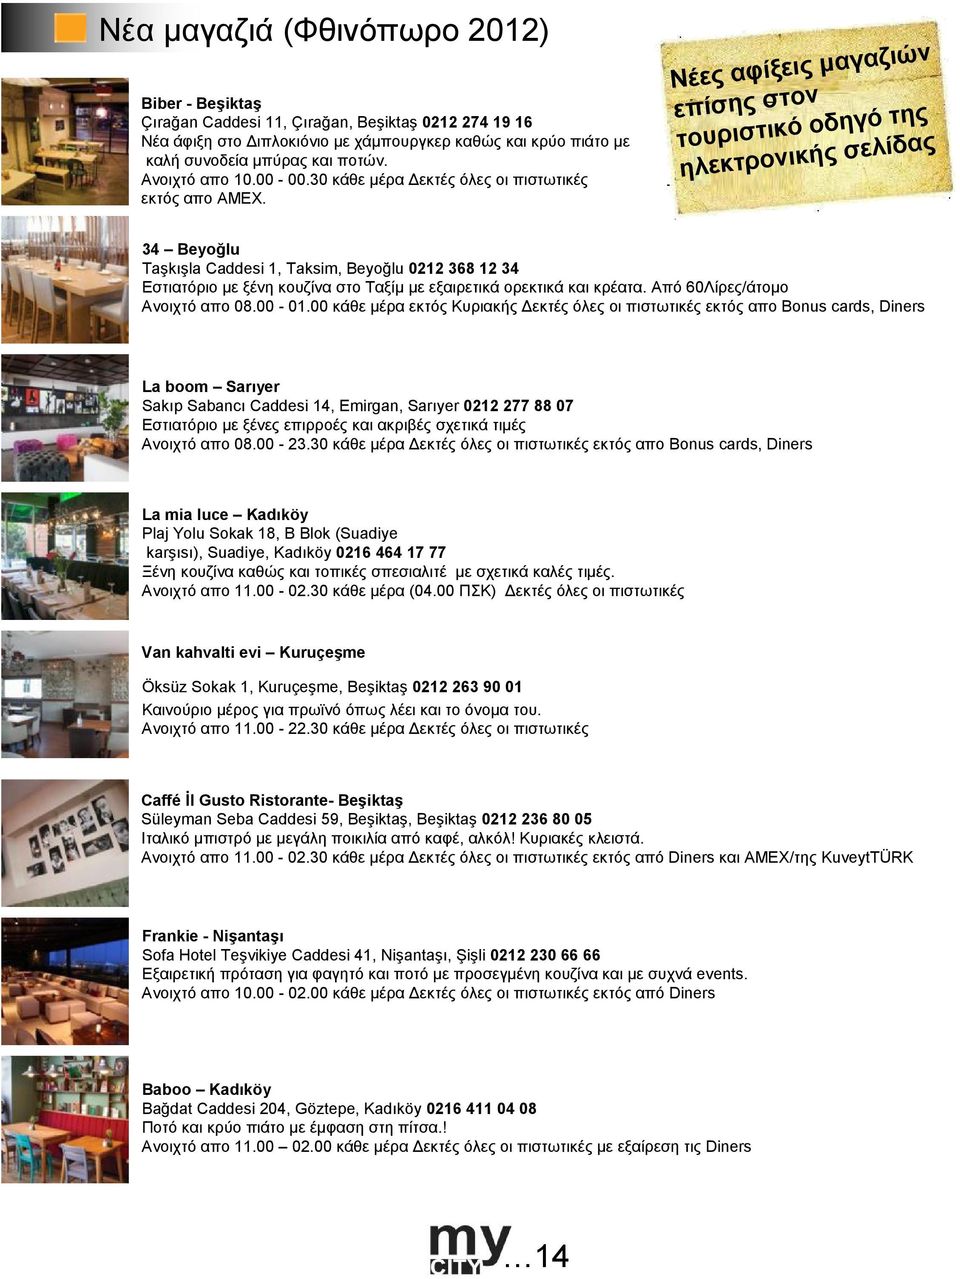 Νέες αφίξεις µαγαζιών επίσης στον τουριστικό οδηγό της ηλεκτρονικής σελίδας 34 Beyoğlu Taşkışla Caddesi 1, Taksim, Beyoğlu 0212 368 12 34 Εστιατόριο µε ξένη κουζίνα στο Ταξίµ µε εξαιρετικά ορεκτικά